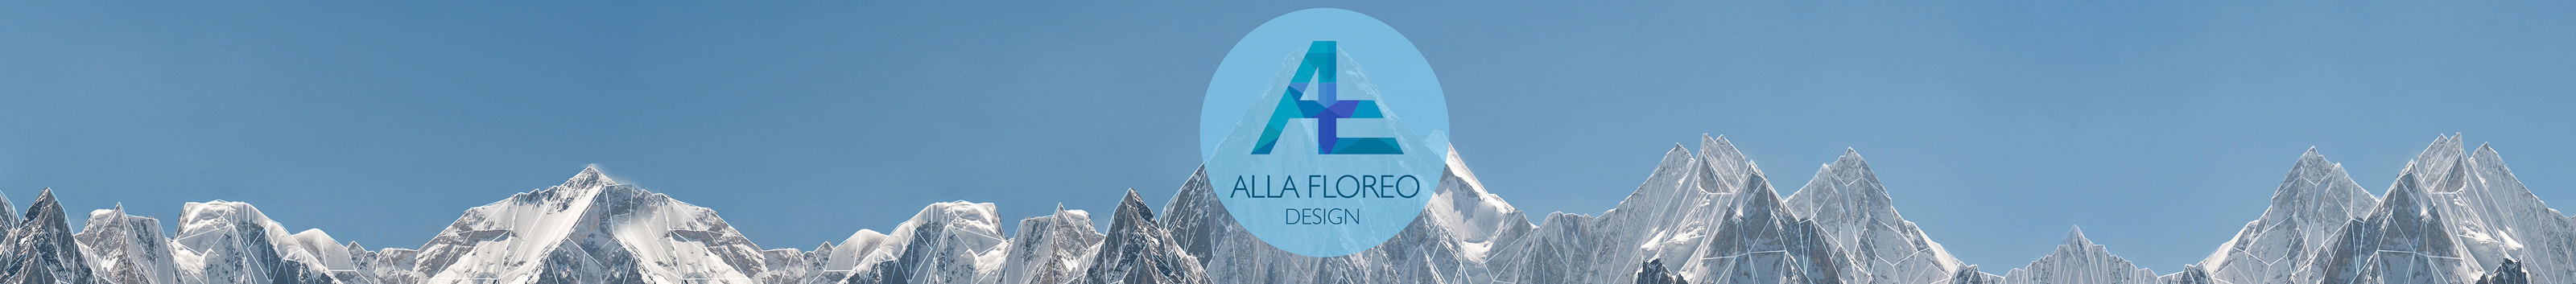 Alla Floreo's profile banner